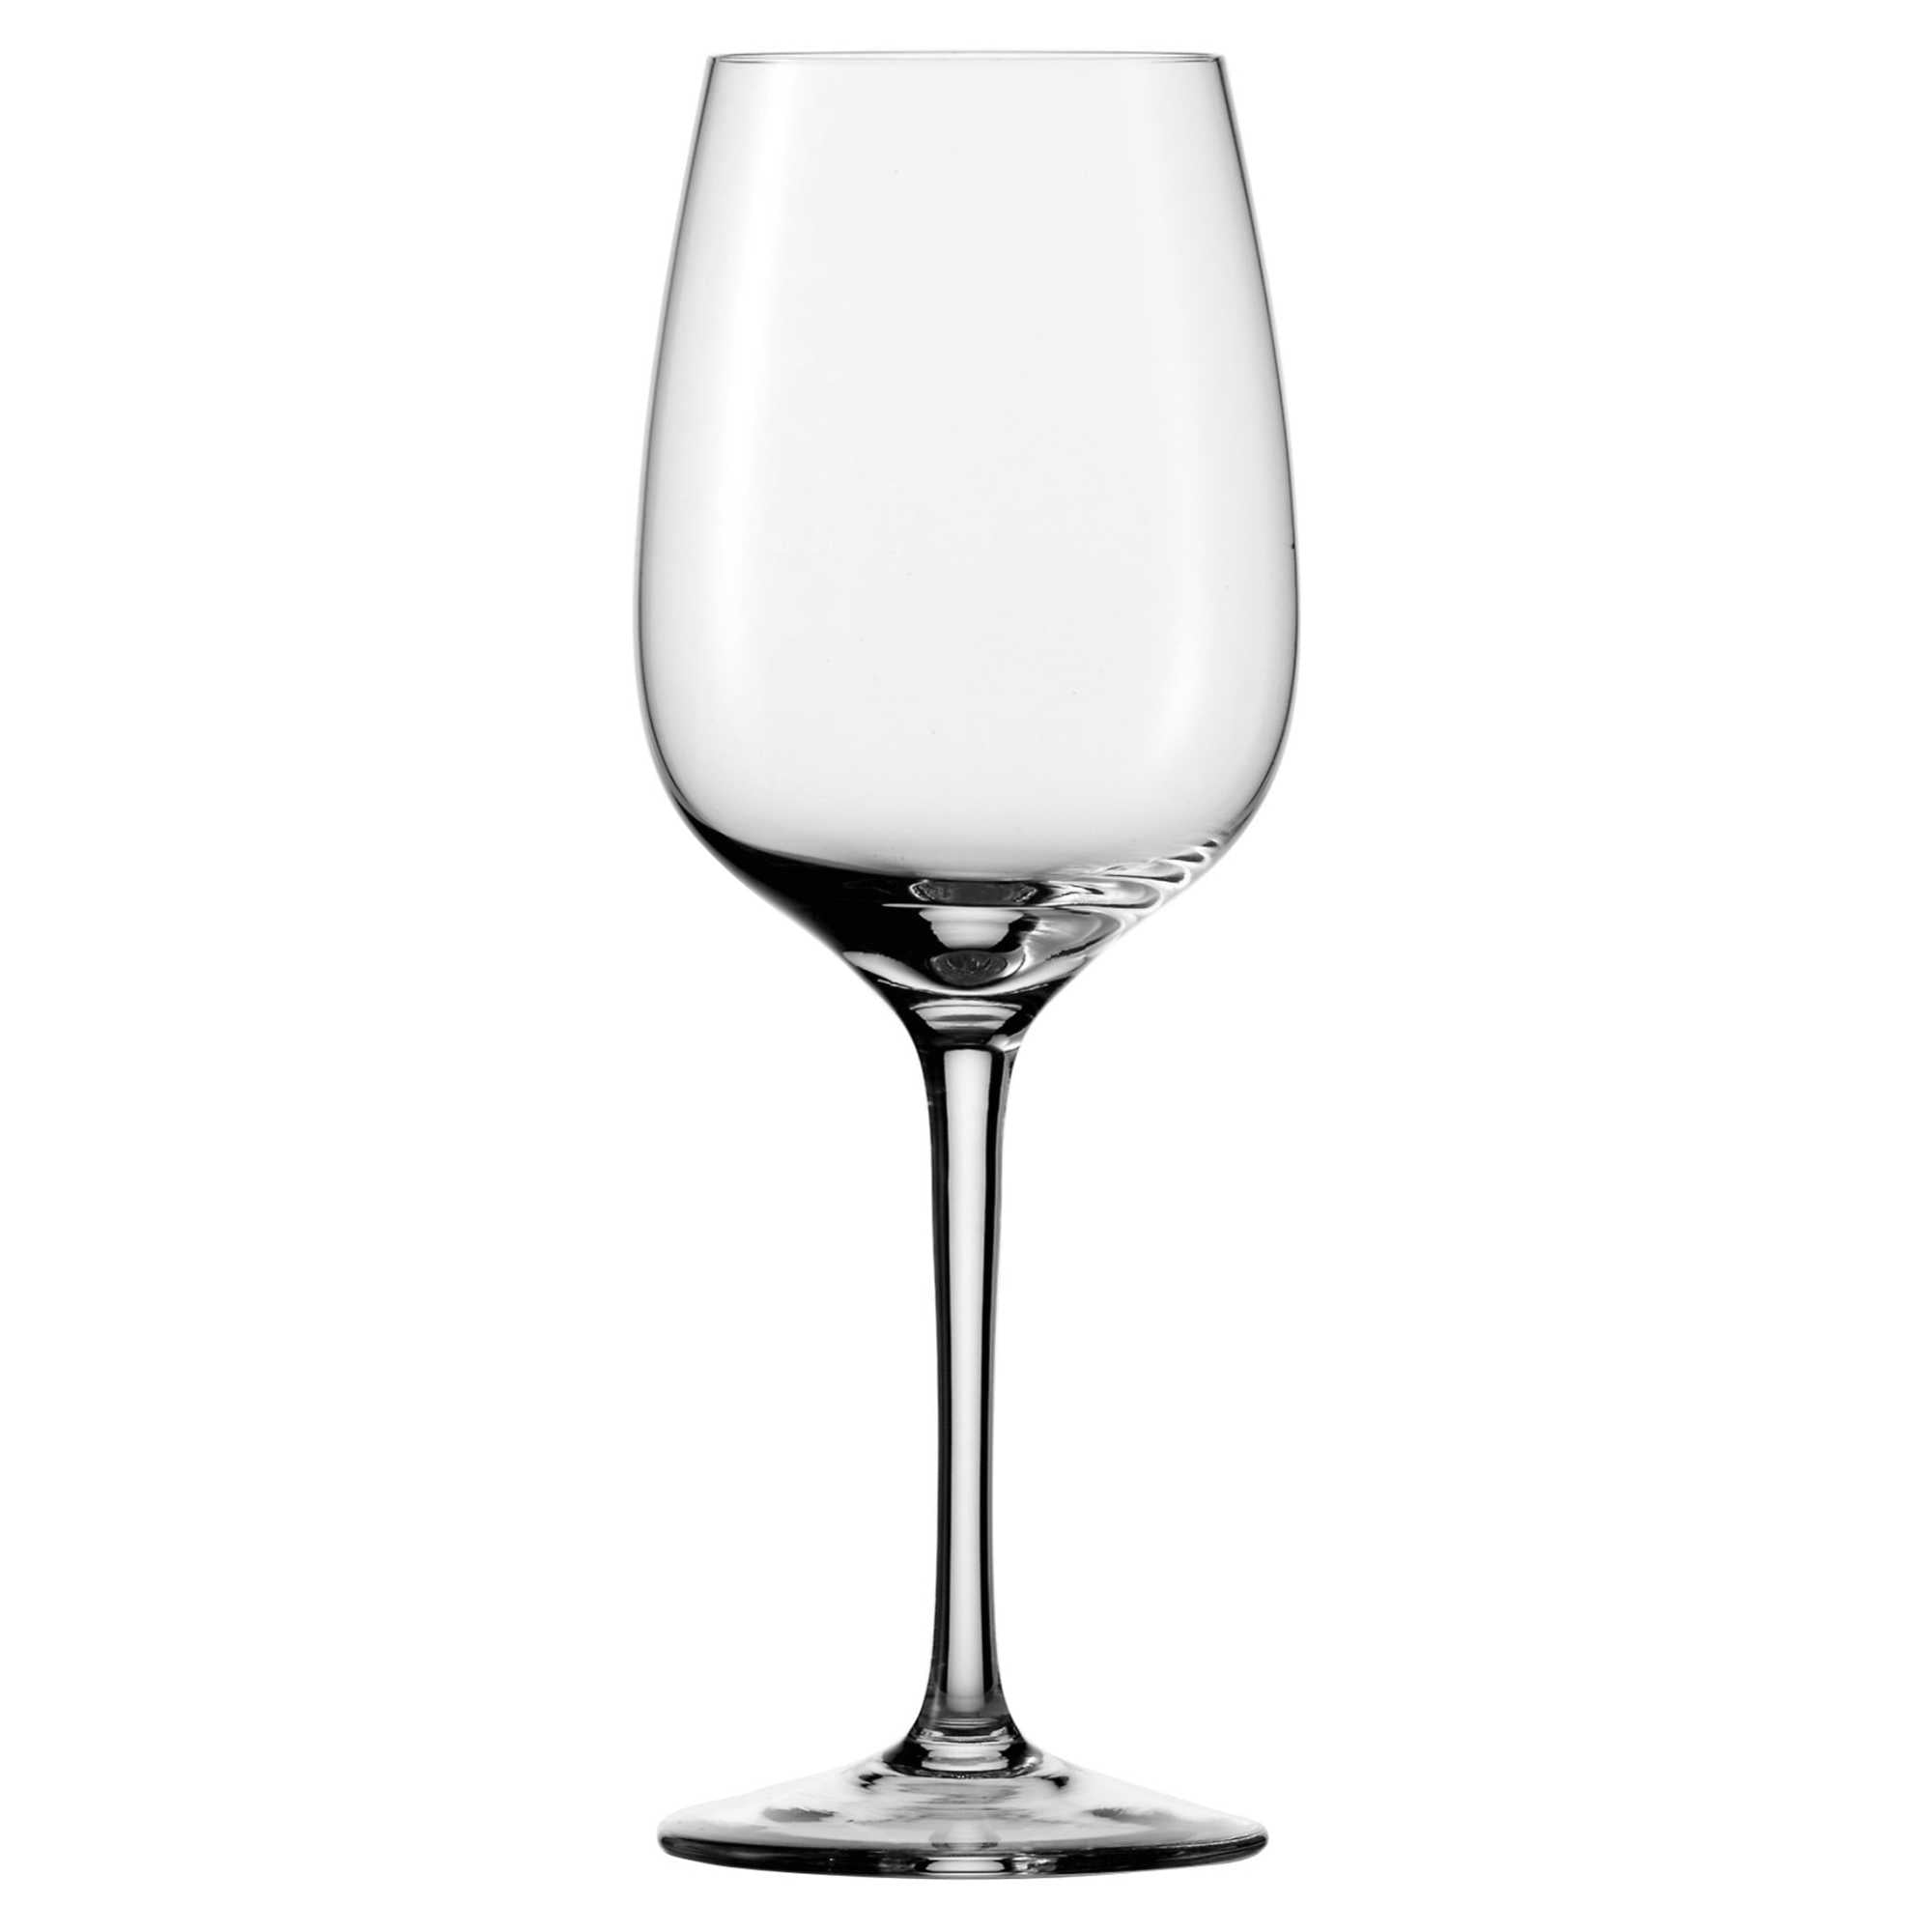 Eisch Superior Chardonnay Glass